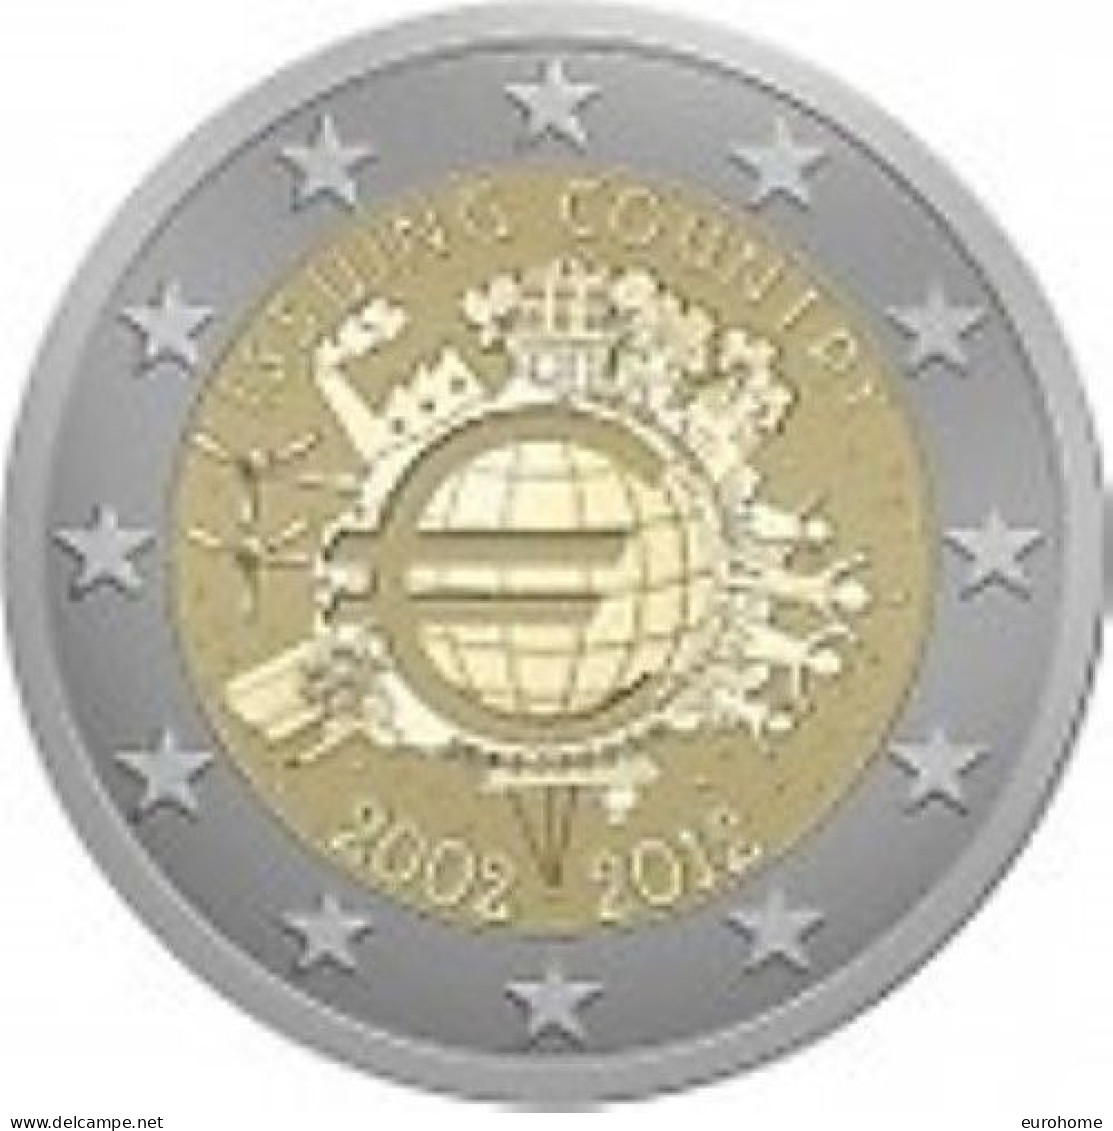 Ierland 2012    2 Euro Commemo   10 Jaar Euro      UNC Uit De Rol  UNC Du Rouleaux  !! - Slovenia